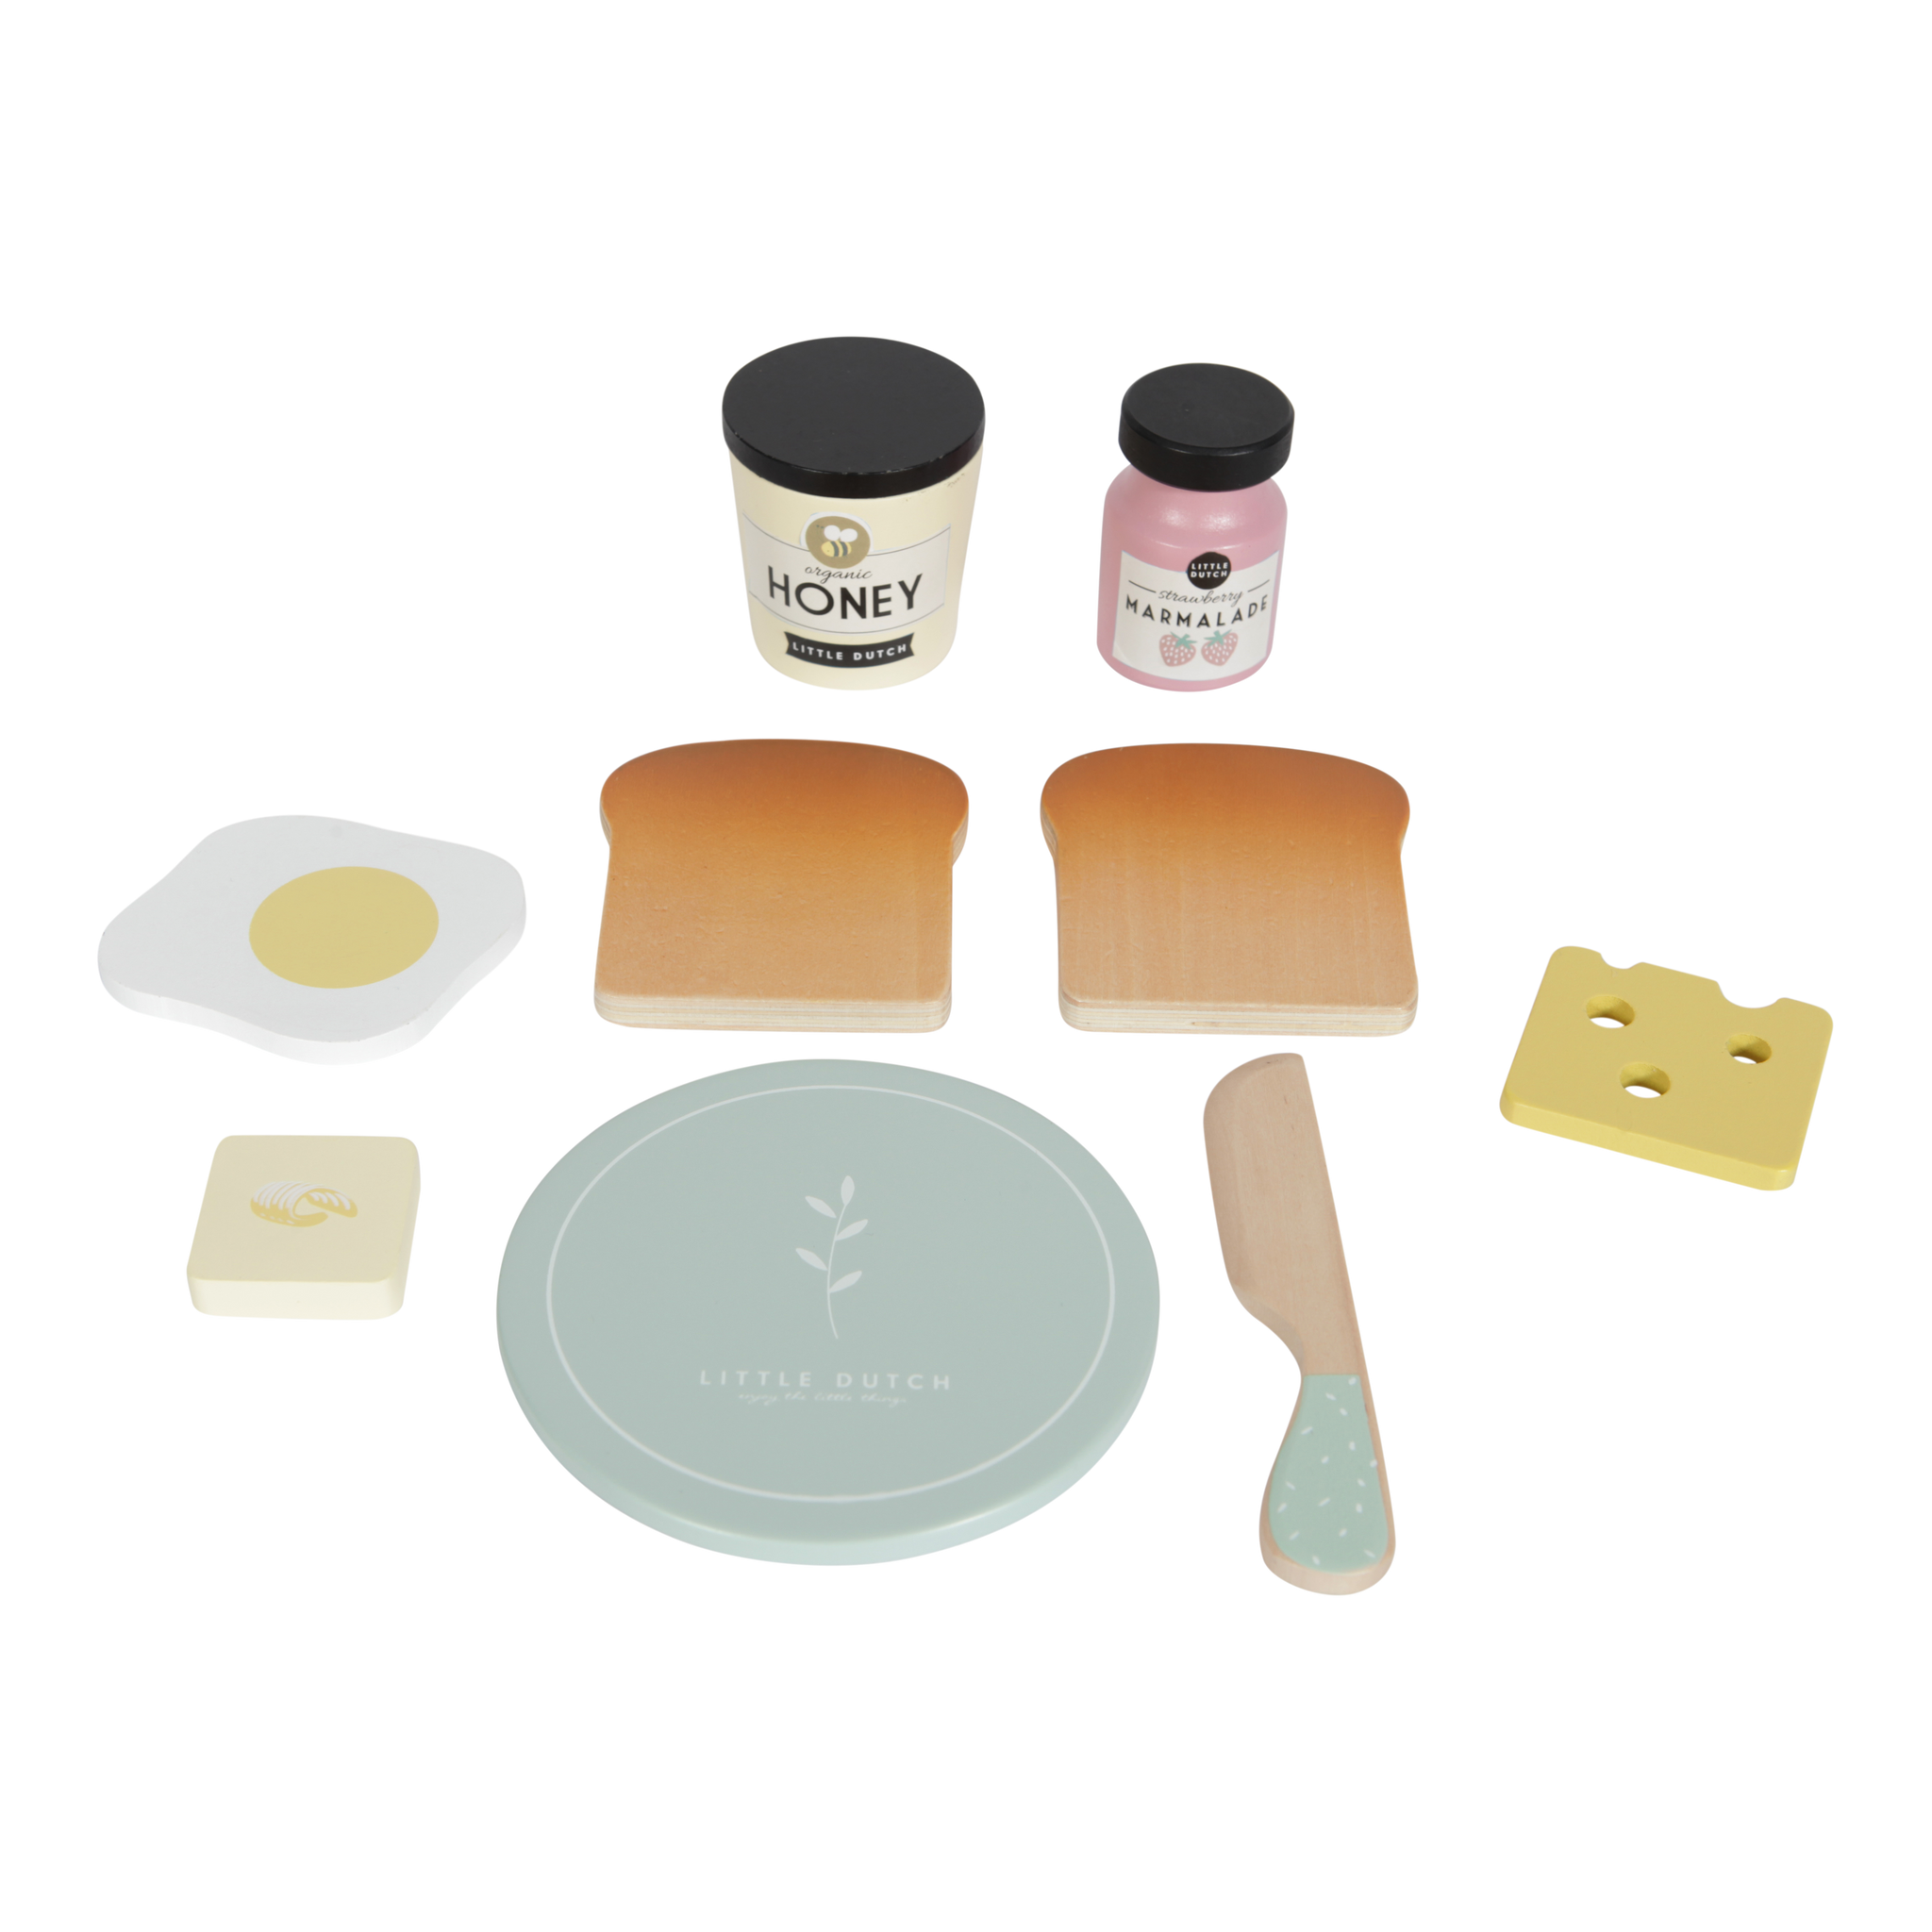 Toaster paine din lemn cu accesorii si functie pop-up - Little Dutch